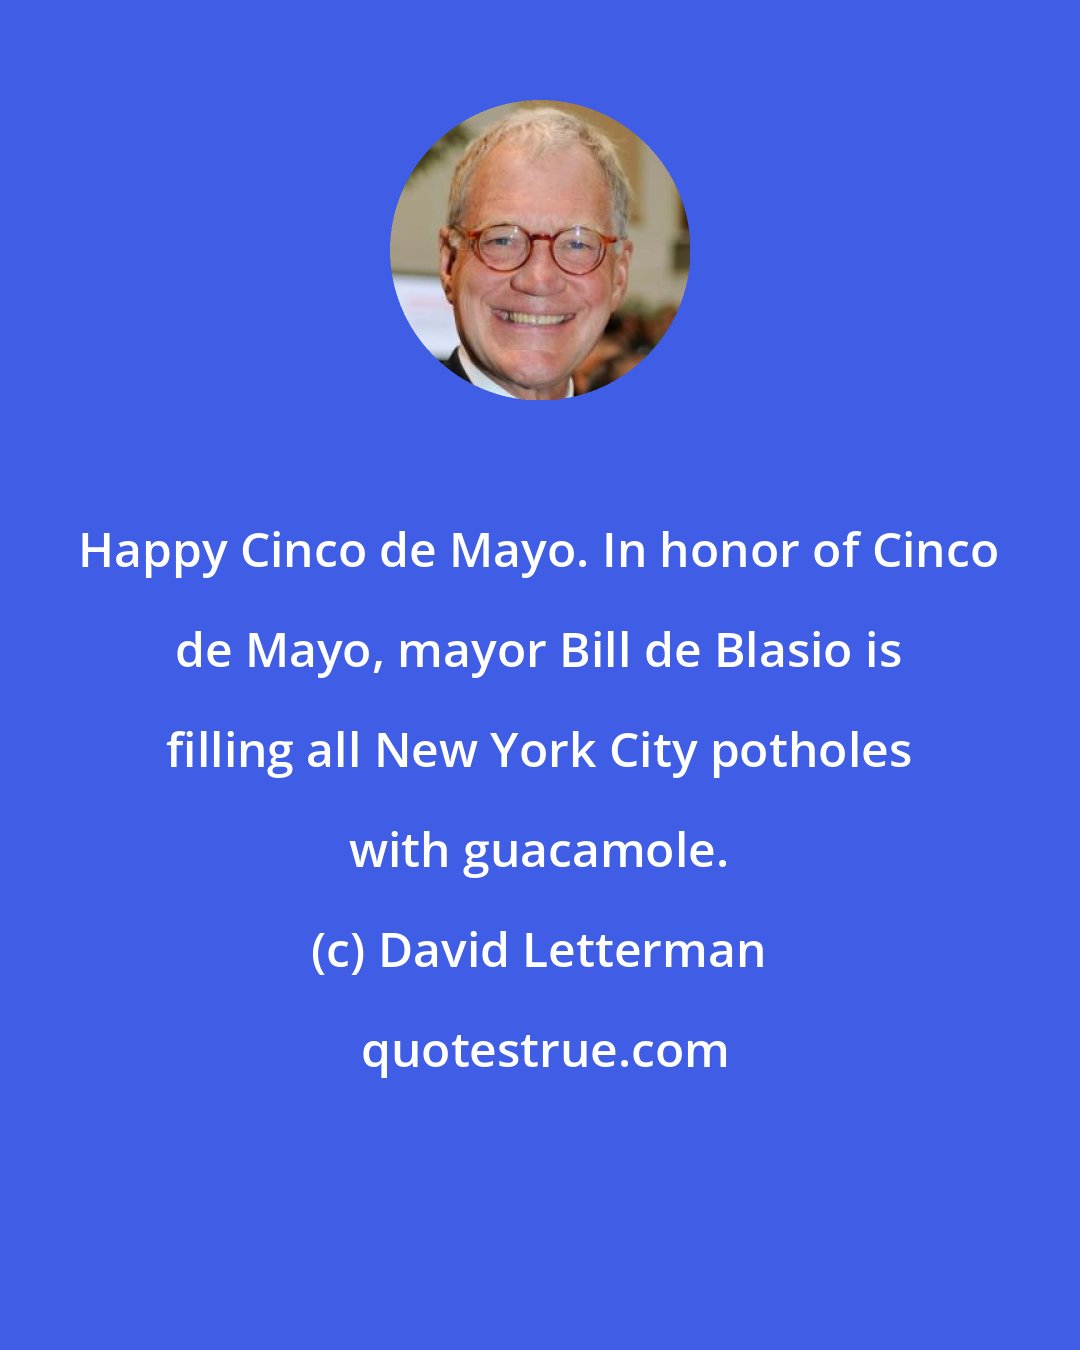 David Letterman: Happy Cinco de Mayo. In honor of Cinco de Mayo, mayor Bill de Blasio is filling all New York City potholes with guacamole.